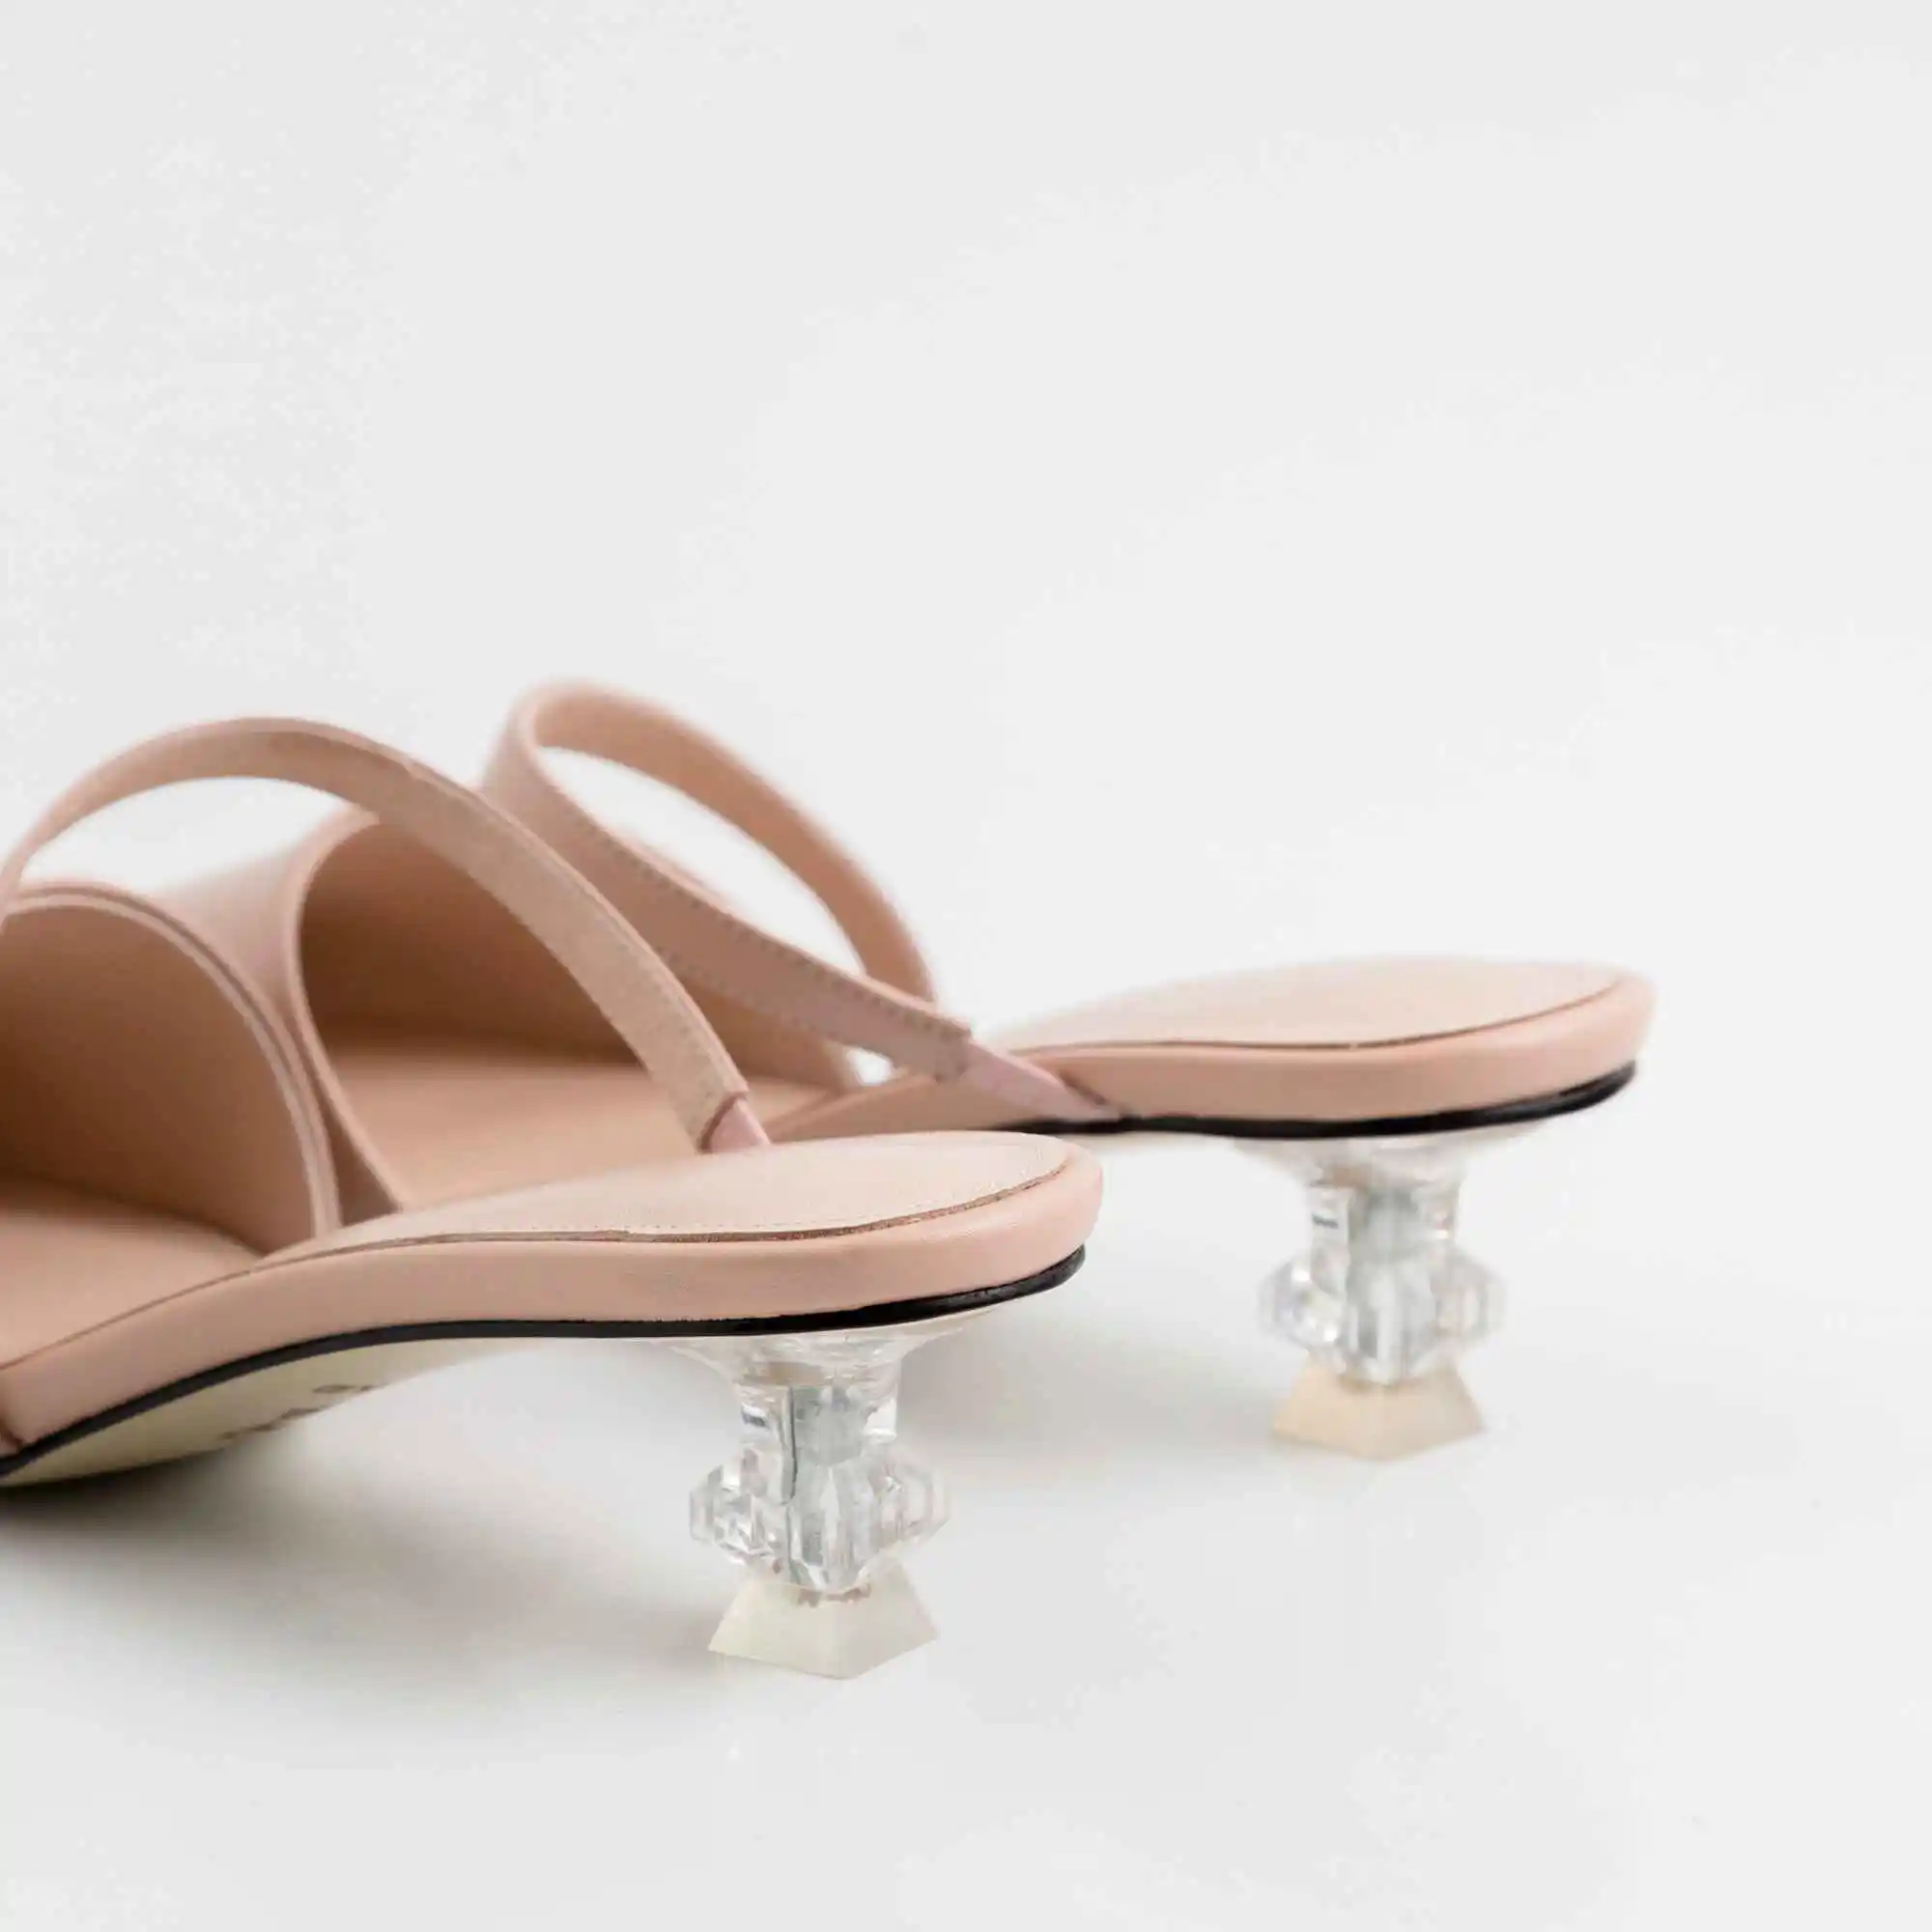 Lenksien/высококачественные туфли-лодочки из натуральной кожи со стразами на среднем каблуке с квадратным носком; модные женские